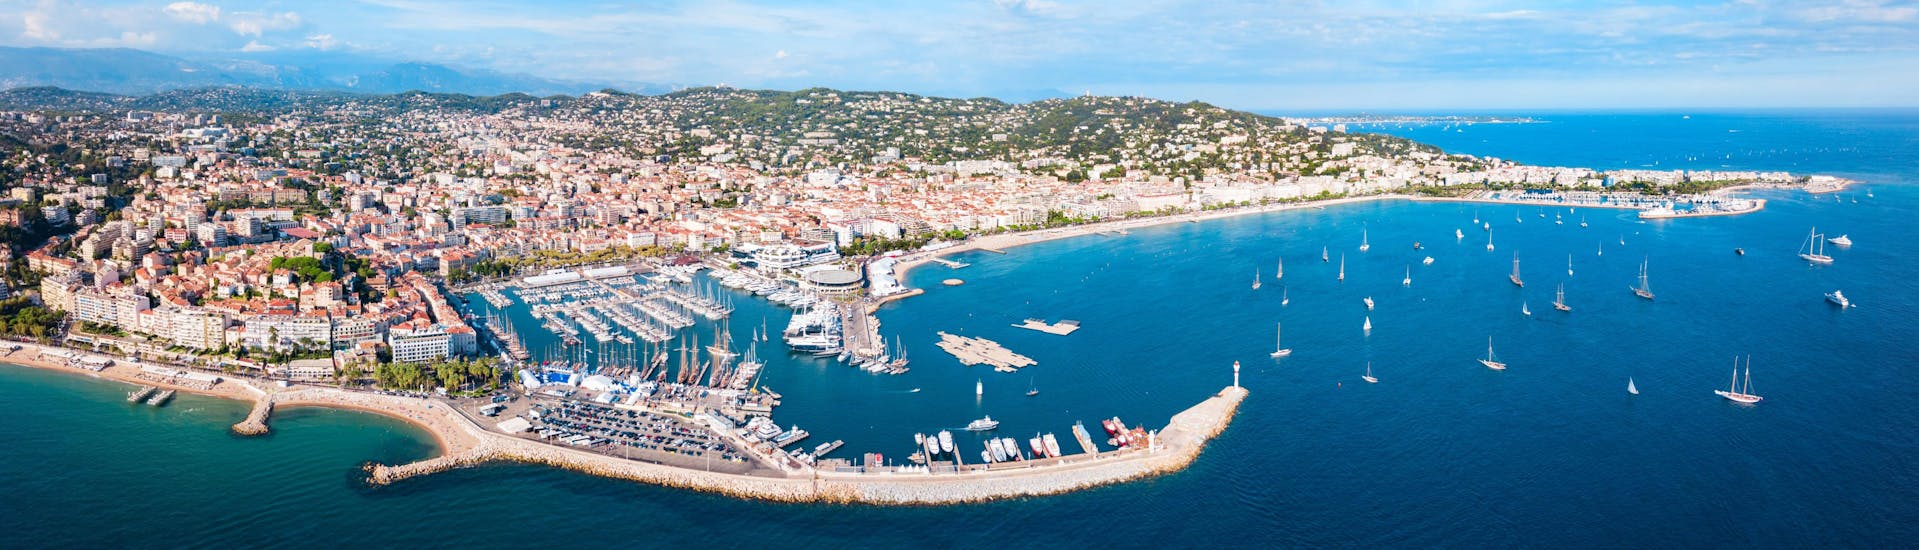 Photo de Cannes en France où l'on peut réserver des excursions en bateau.